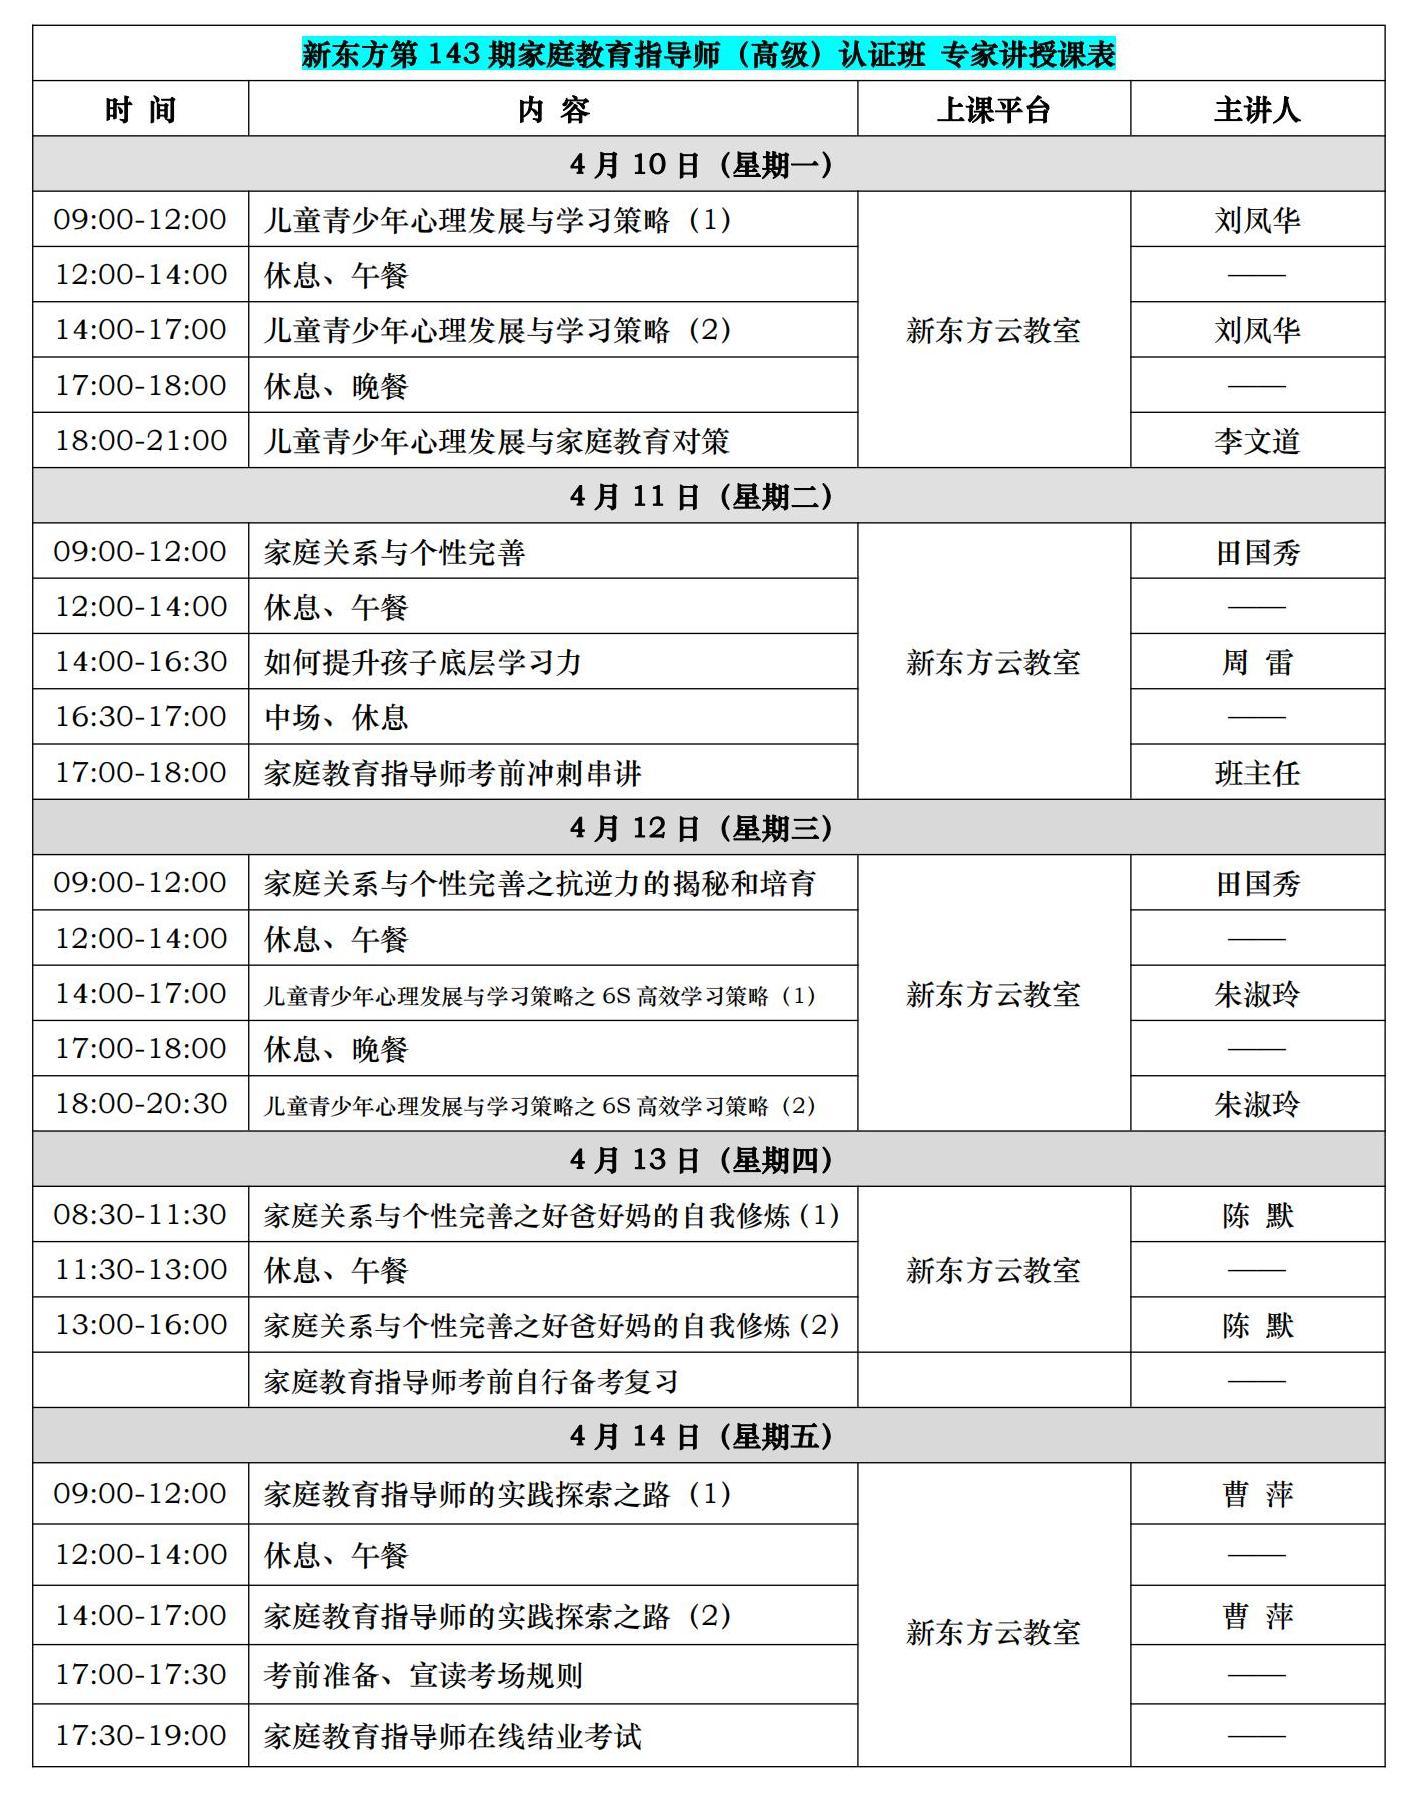 新東方第143期高級指導師認證培訓(4月10日至14日）.jpg